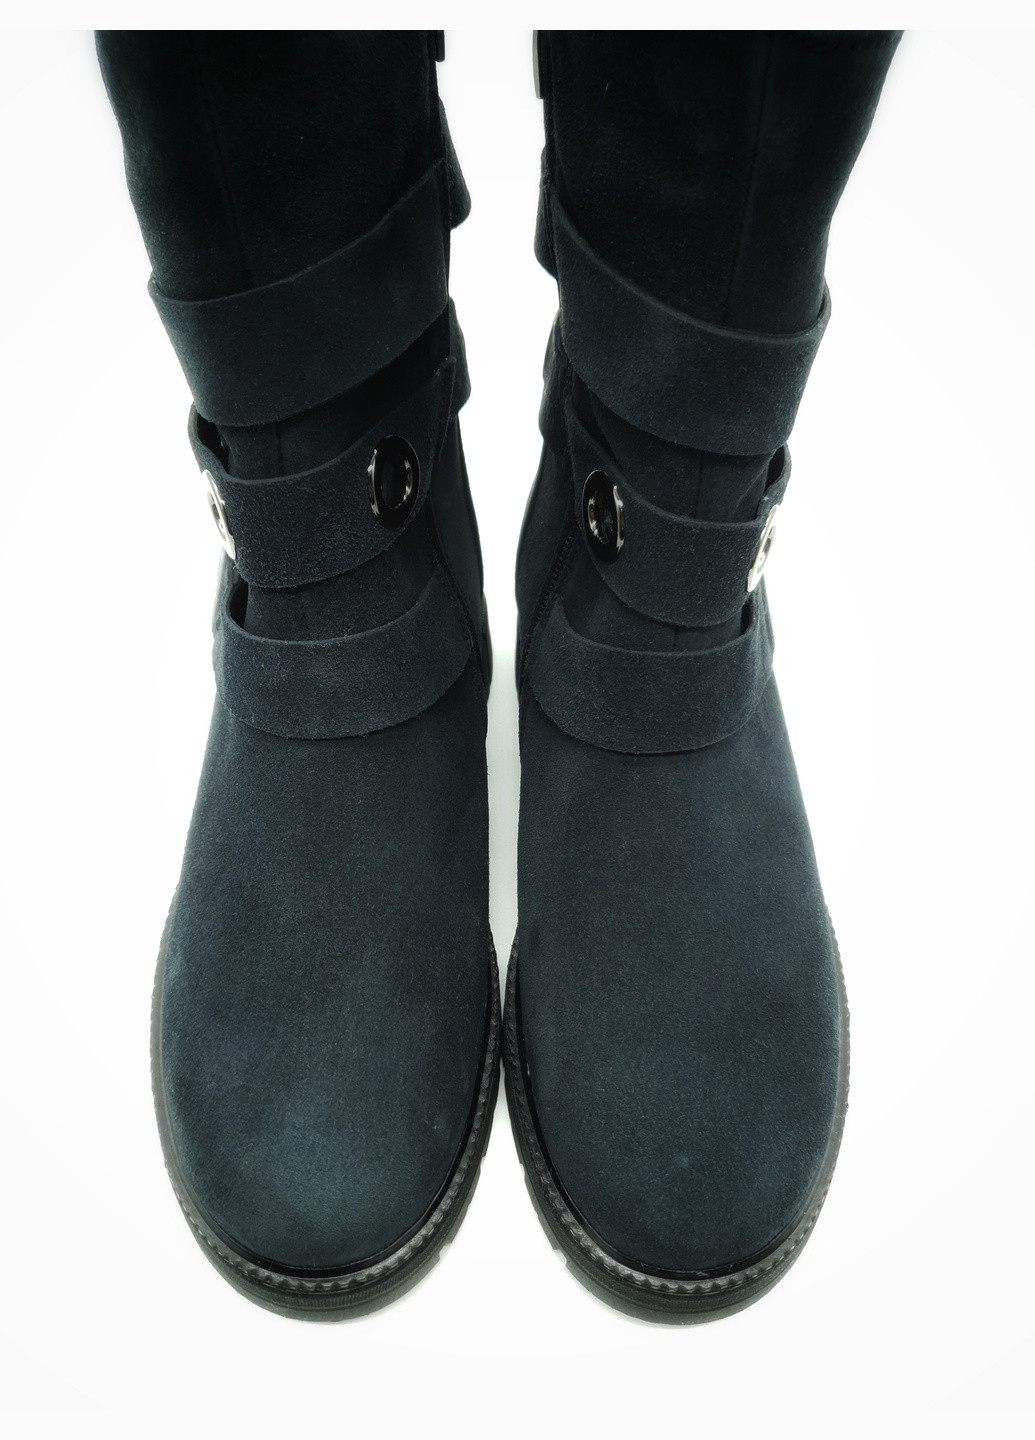 Осенние женские ботинки зимние синие замшевые fs-18-4 23,5 см (р) Foot Step